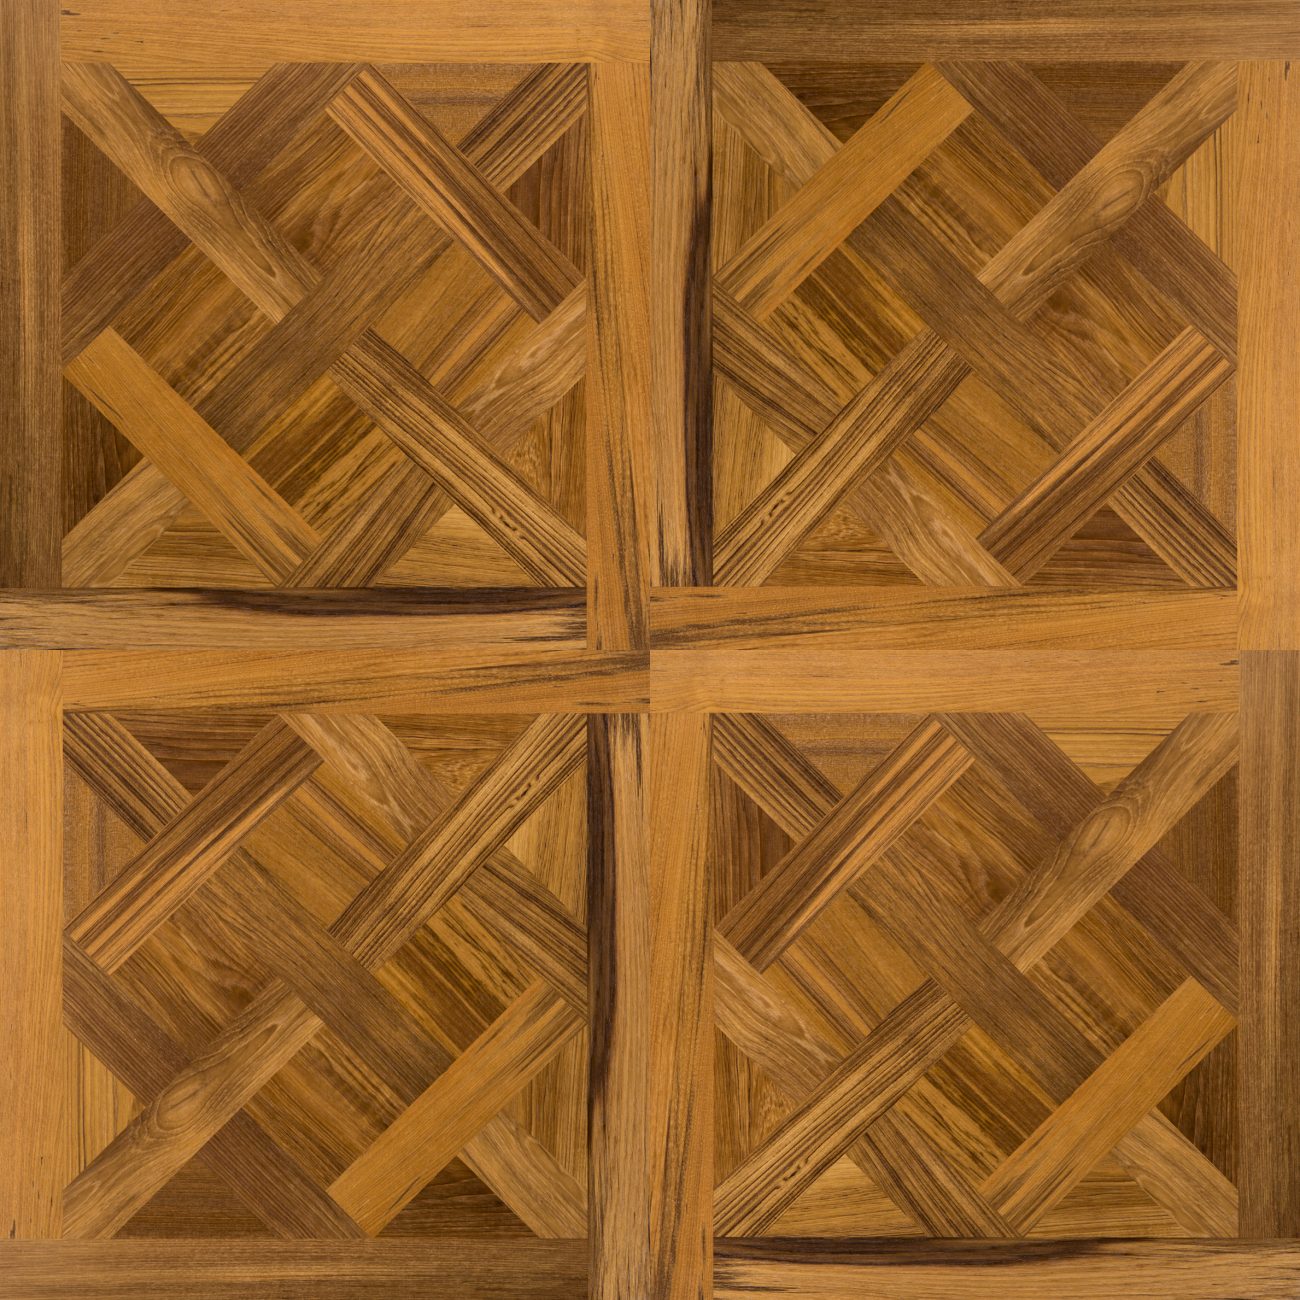 Atelier Déco Versailles, Wooden Flooring Solutions